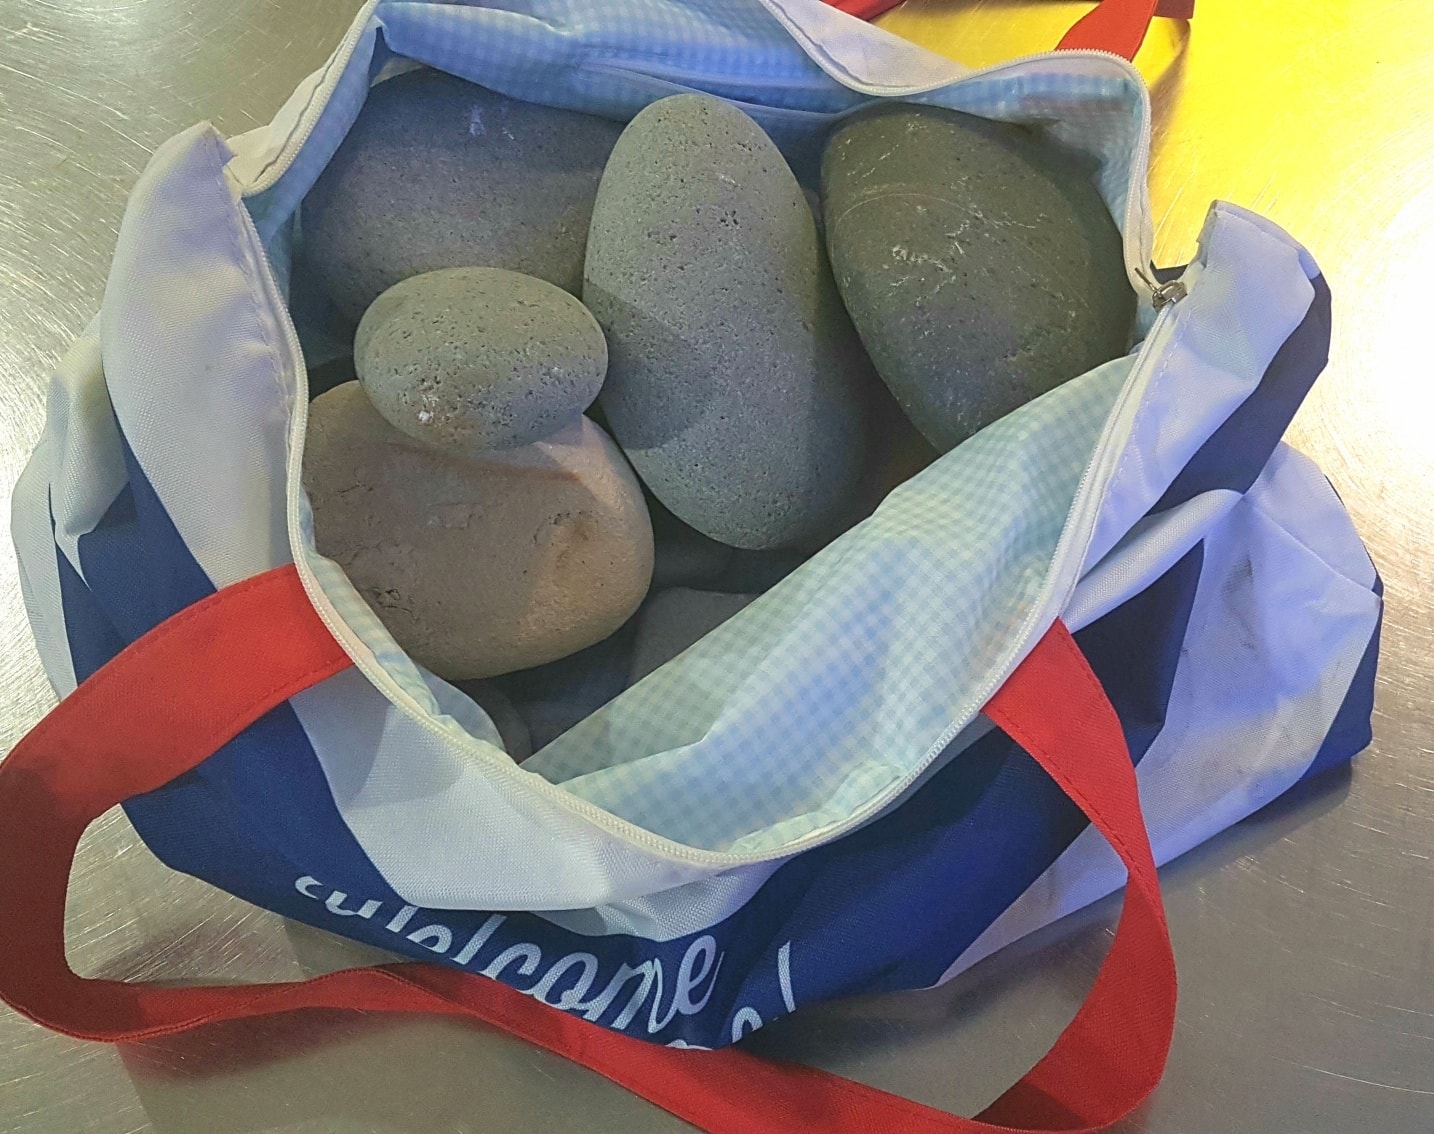 Pagano 20kg extra per pietre rubate dalla spiaggia: turisti fermati